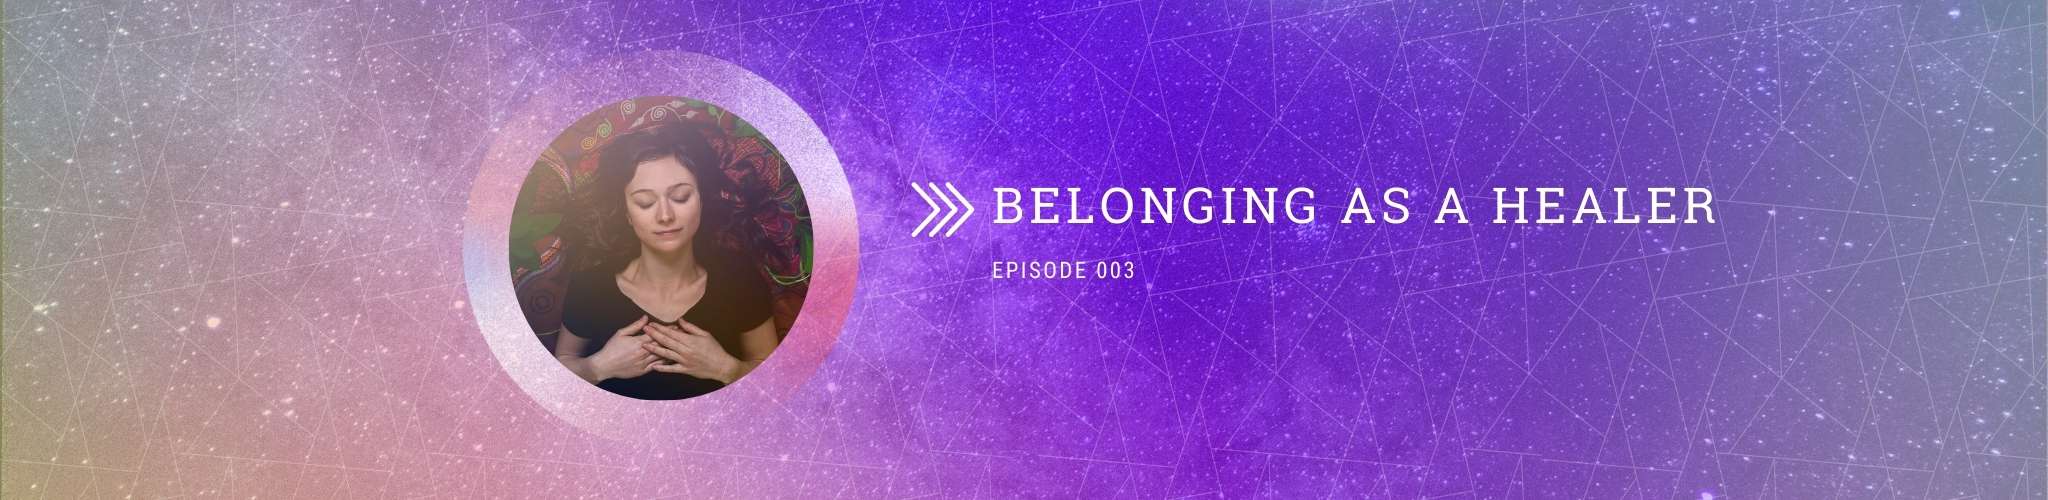 03 abby belonging as a healer banner